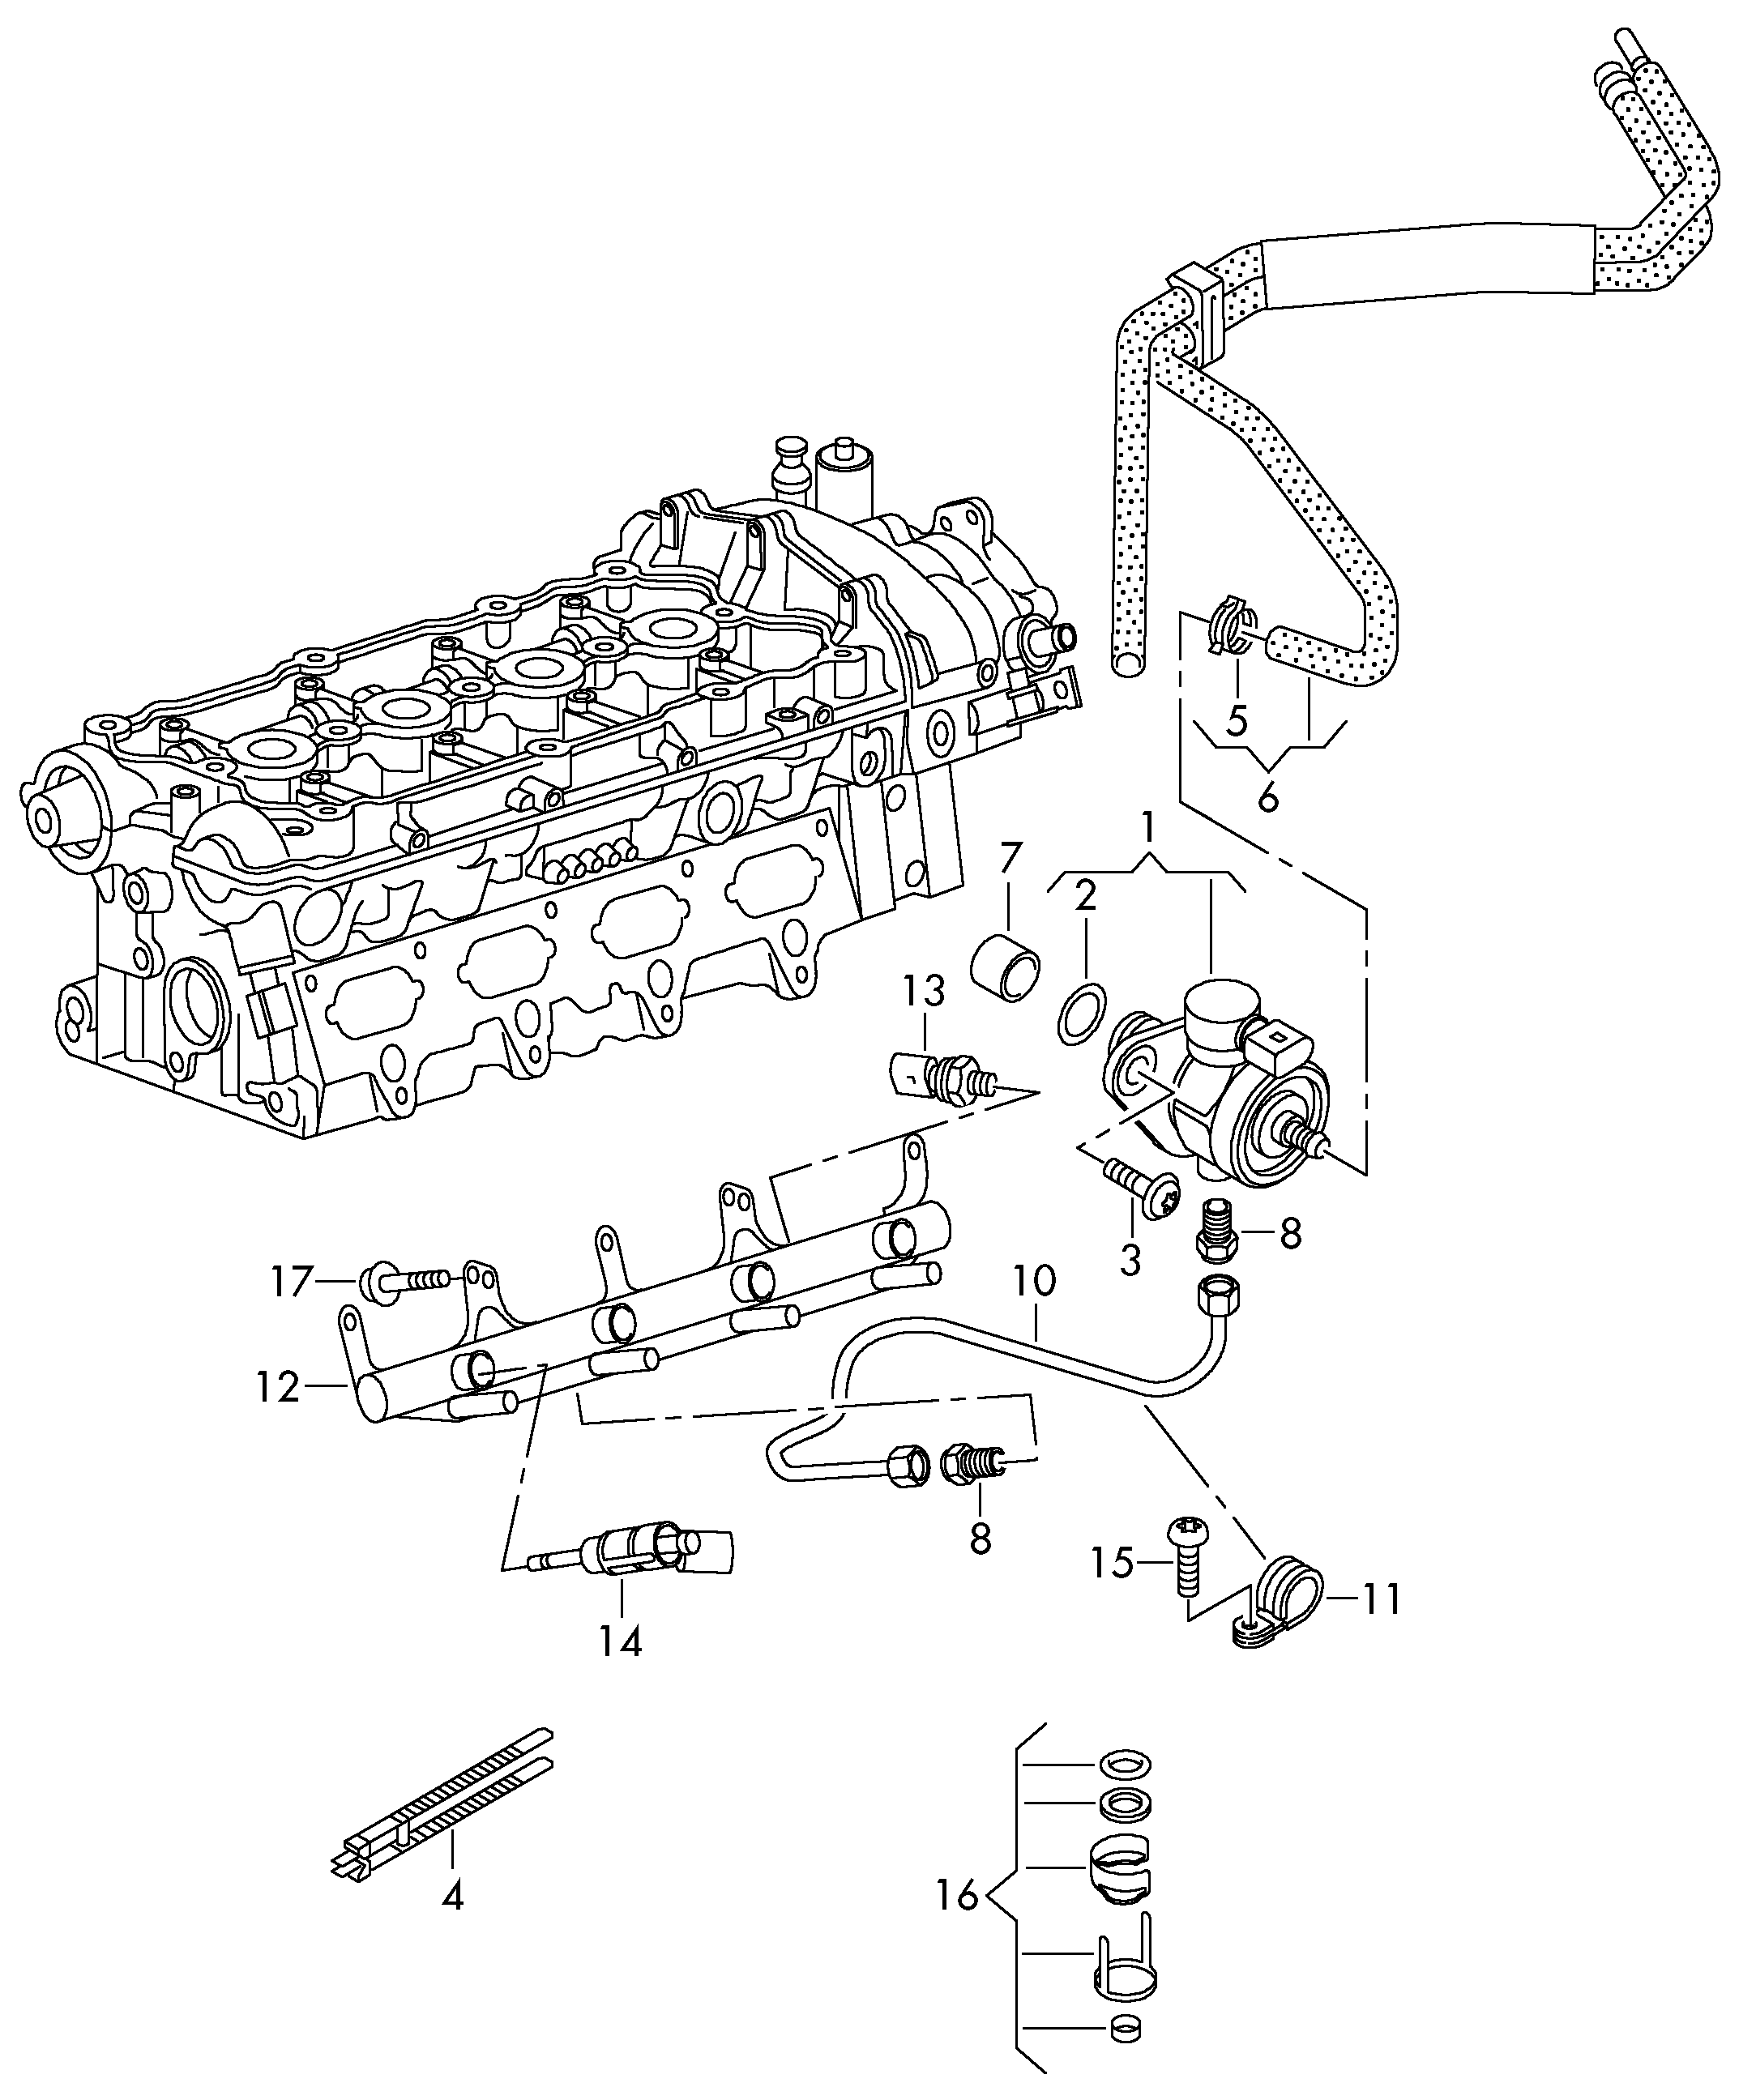 bomba de combustibledistribuidor combustibleInyector 2,0l - Transporter - tr